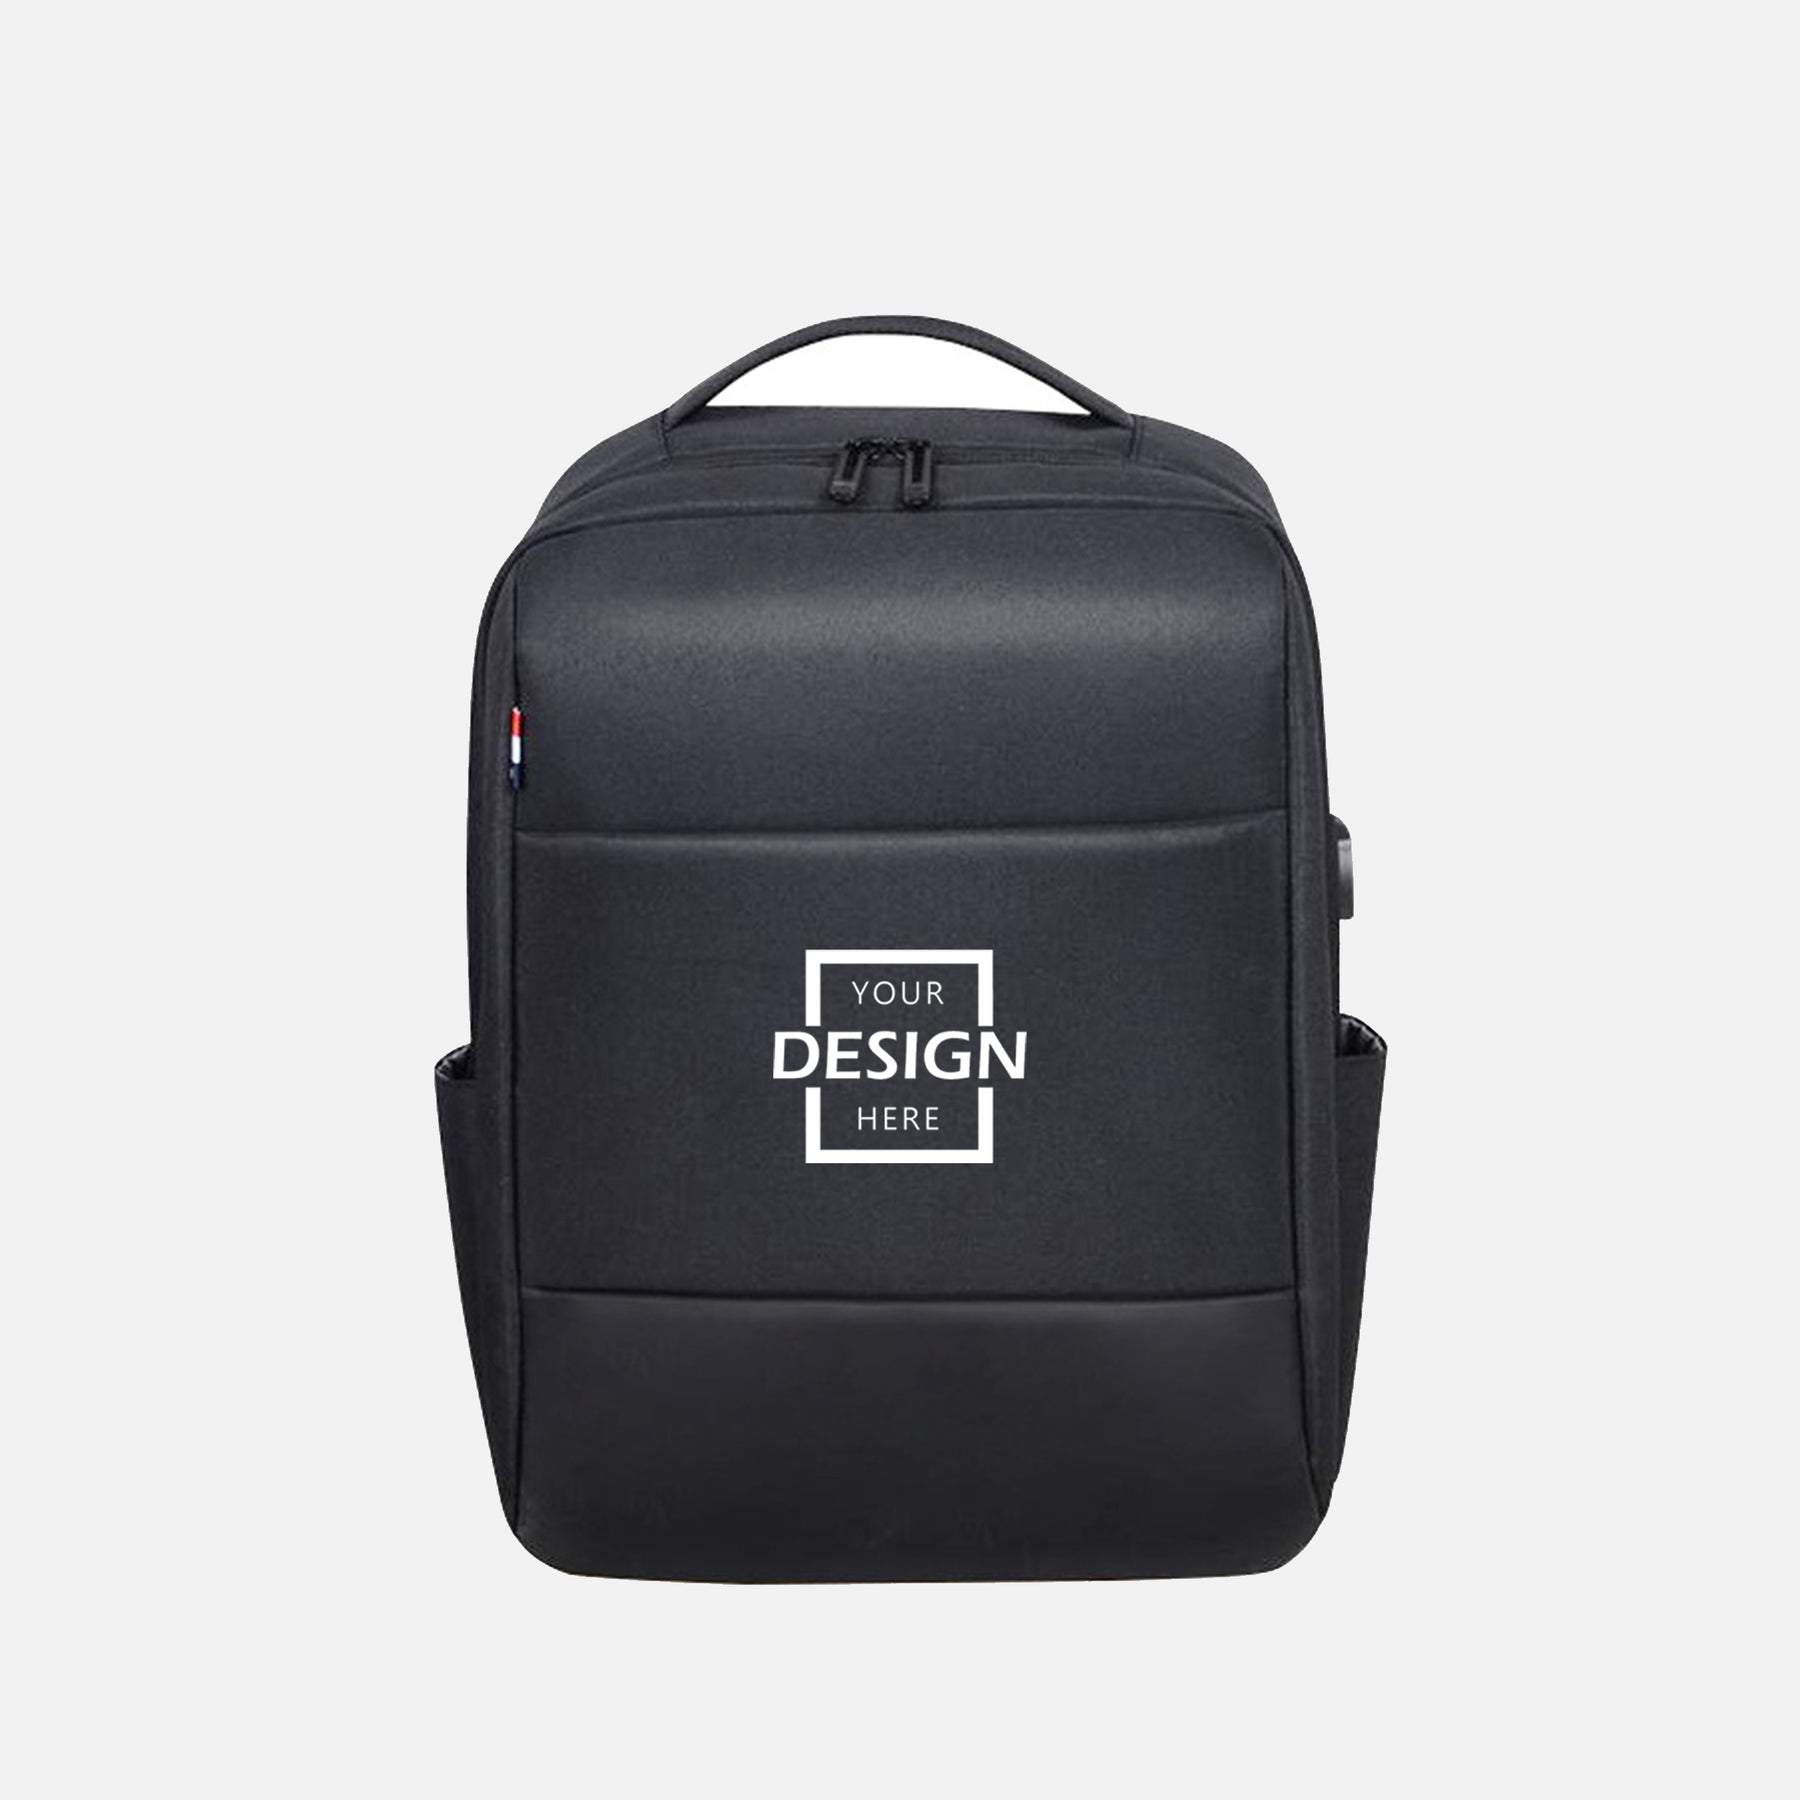 Business Travel Luggage Backpack Bag∣多功能休閒背包